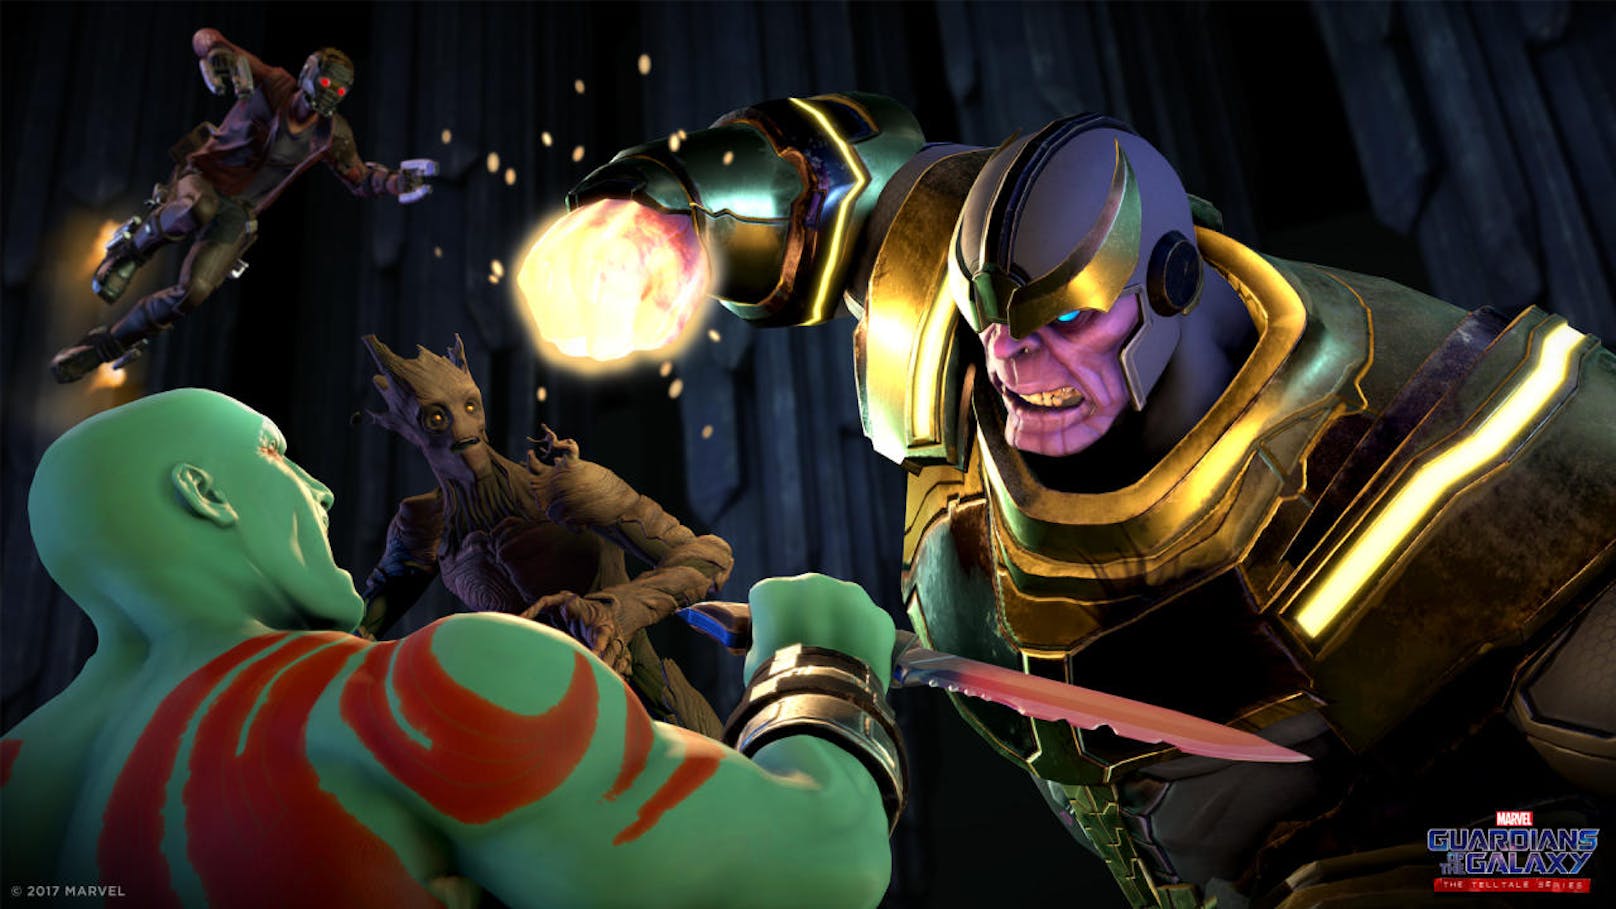 Die Guardians treffen auf Oberschurke Thanos und sind gleichzeitig auf der Jagd nach einem mächtigen Artefakt, dass jeder der Guardians aus anderen persönlichen Gründen für sich haben will.